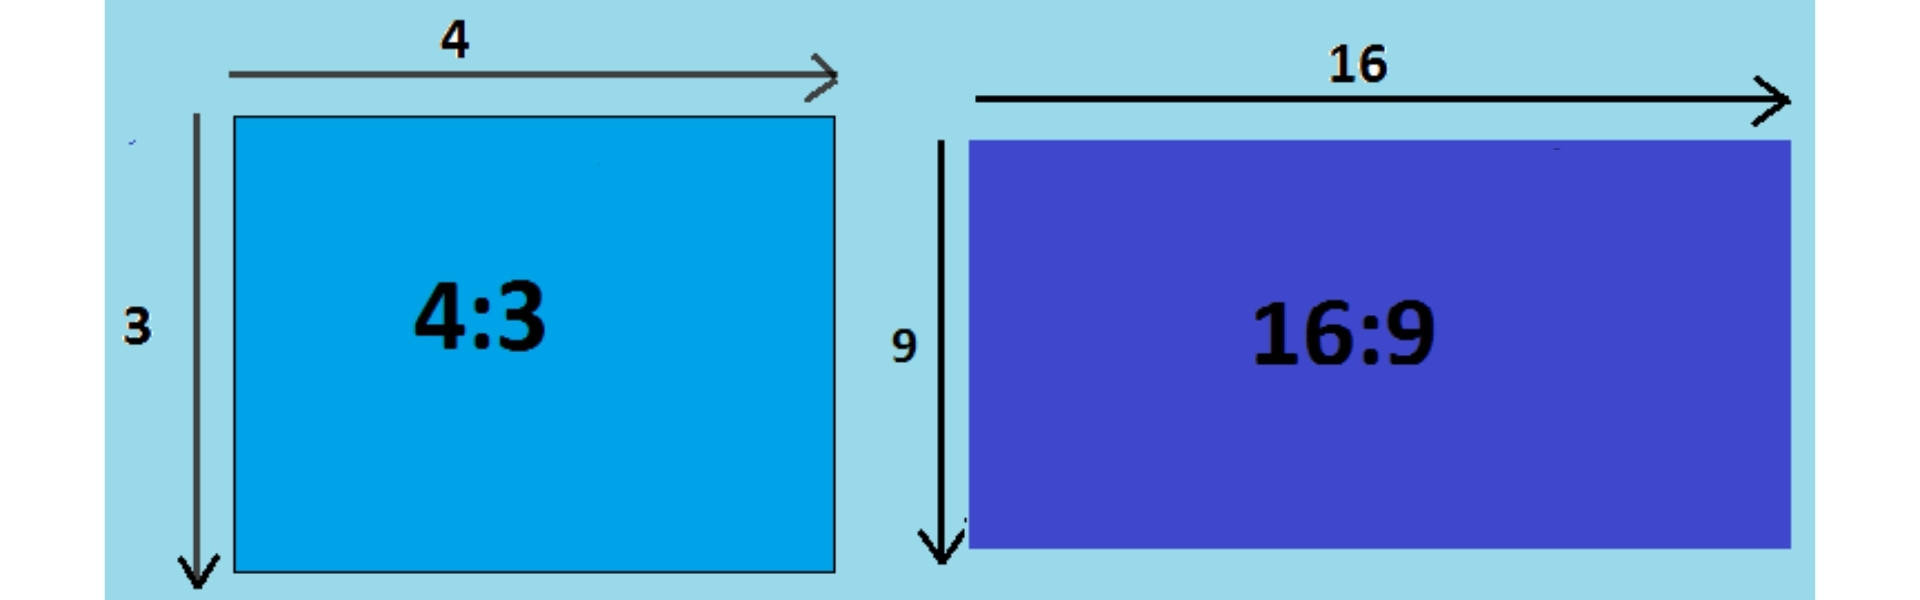 Размеры экрана 4 3. Формат изображения 16 9 что это такое. Формат 16 9 соотношение сторон. Формат экрана 4х3. Формат экрана 16 9 что это.